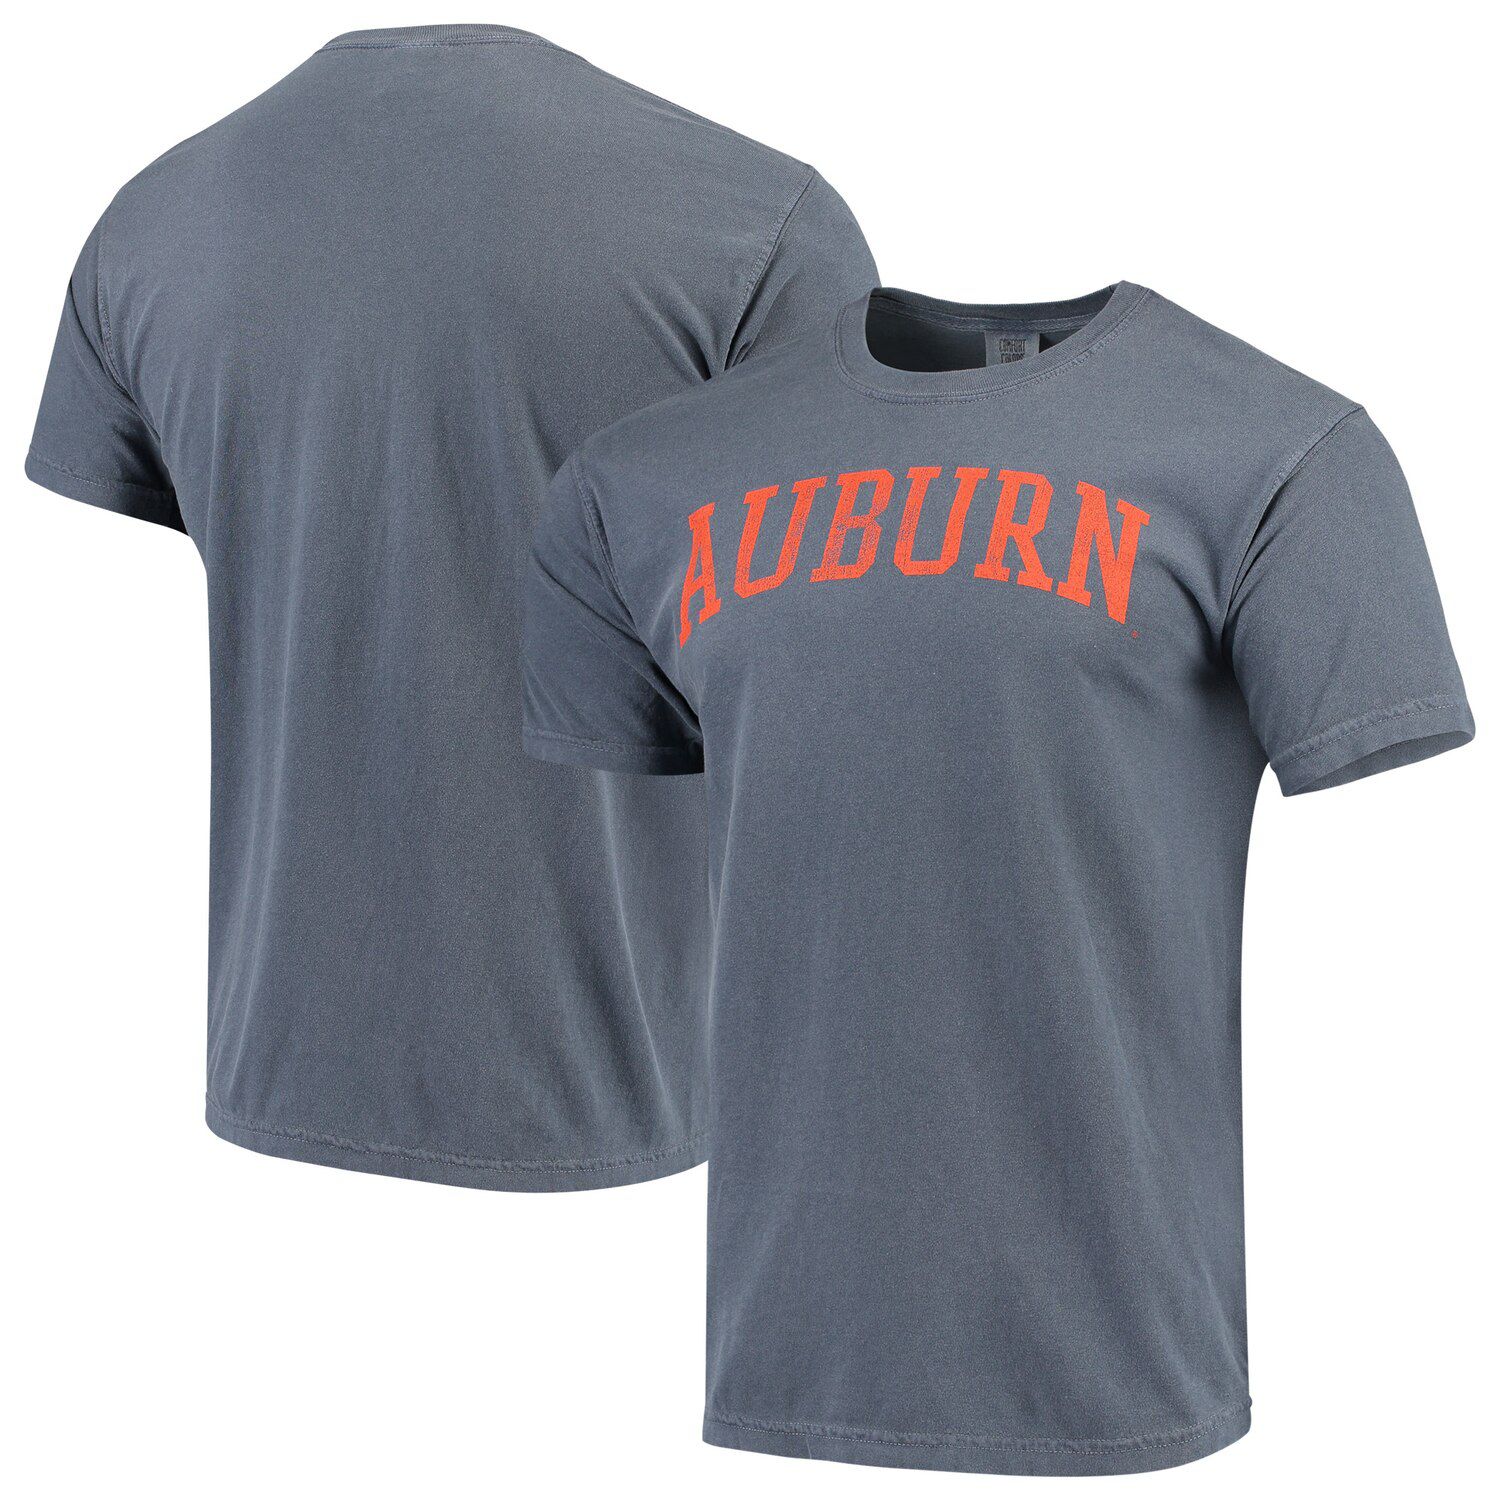 auburn comfort colors shirt